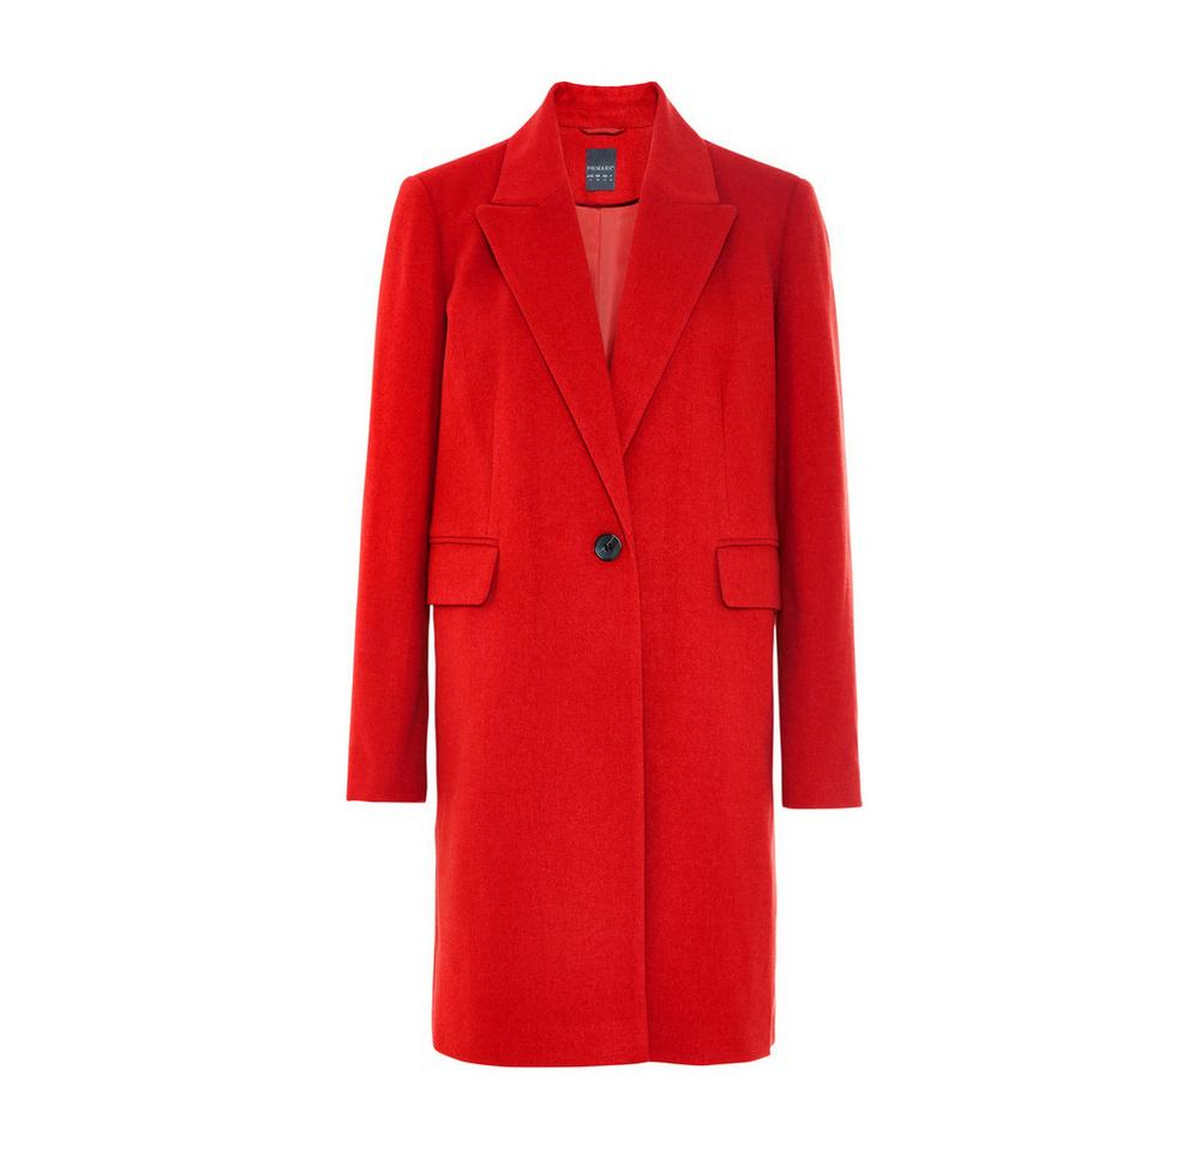 El abrigo rojo de Primark el favorito de mujeres mayores de 50 más